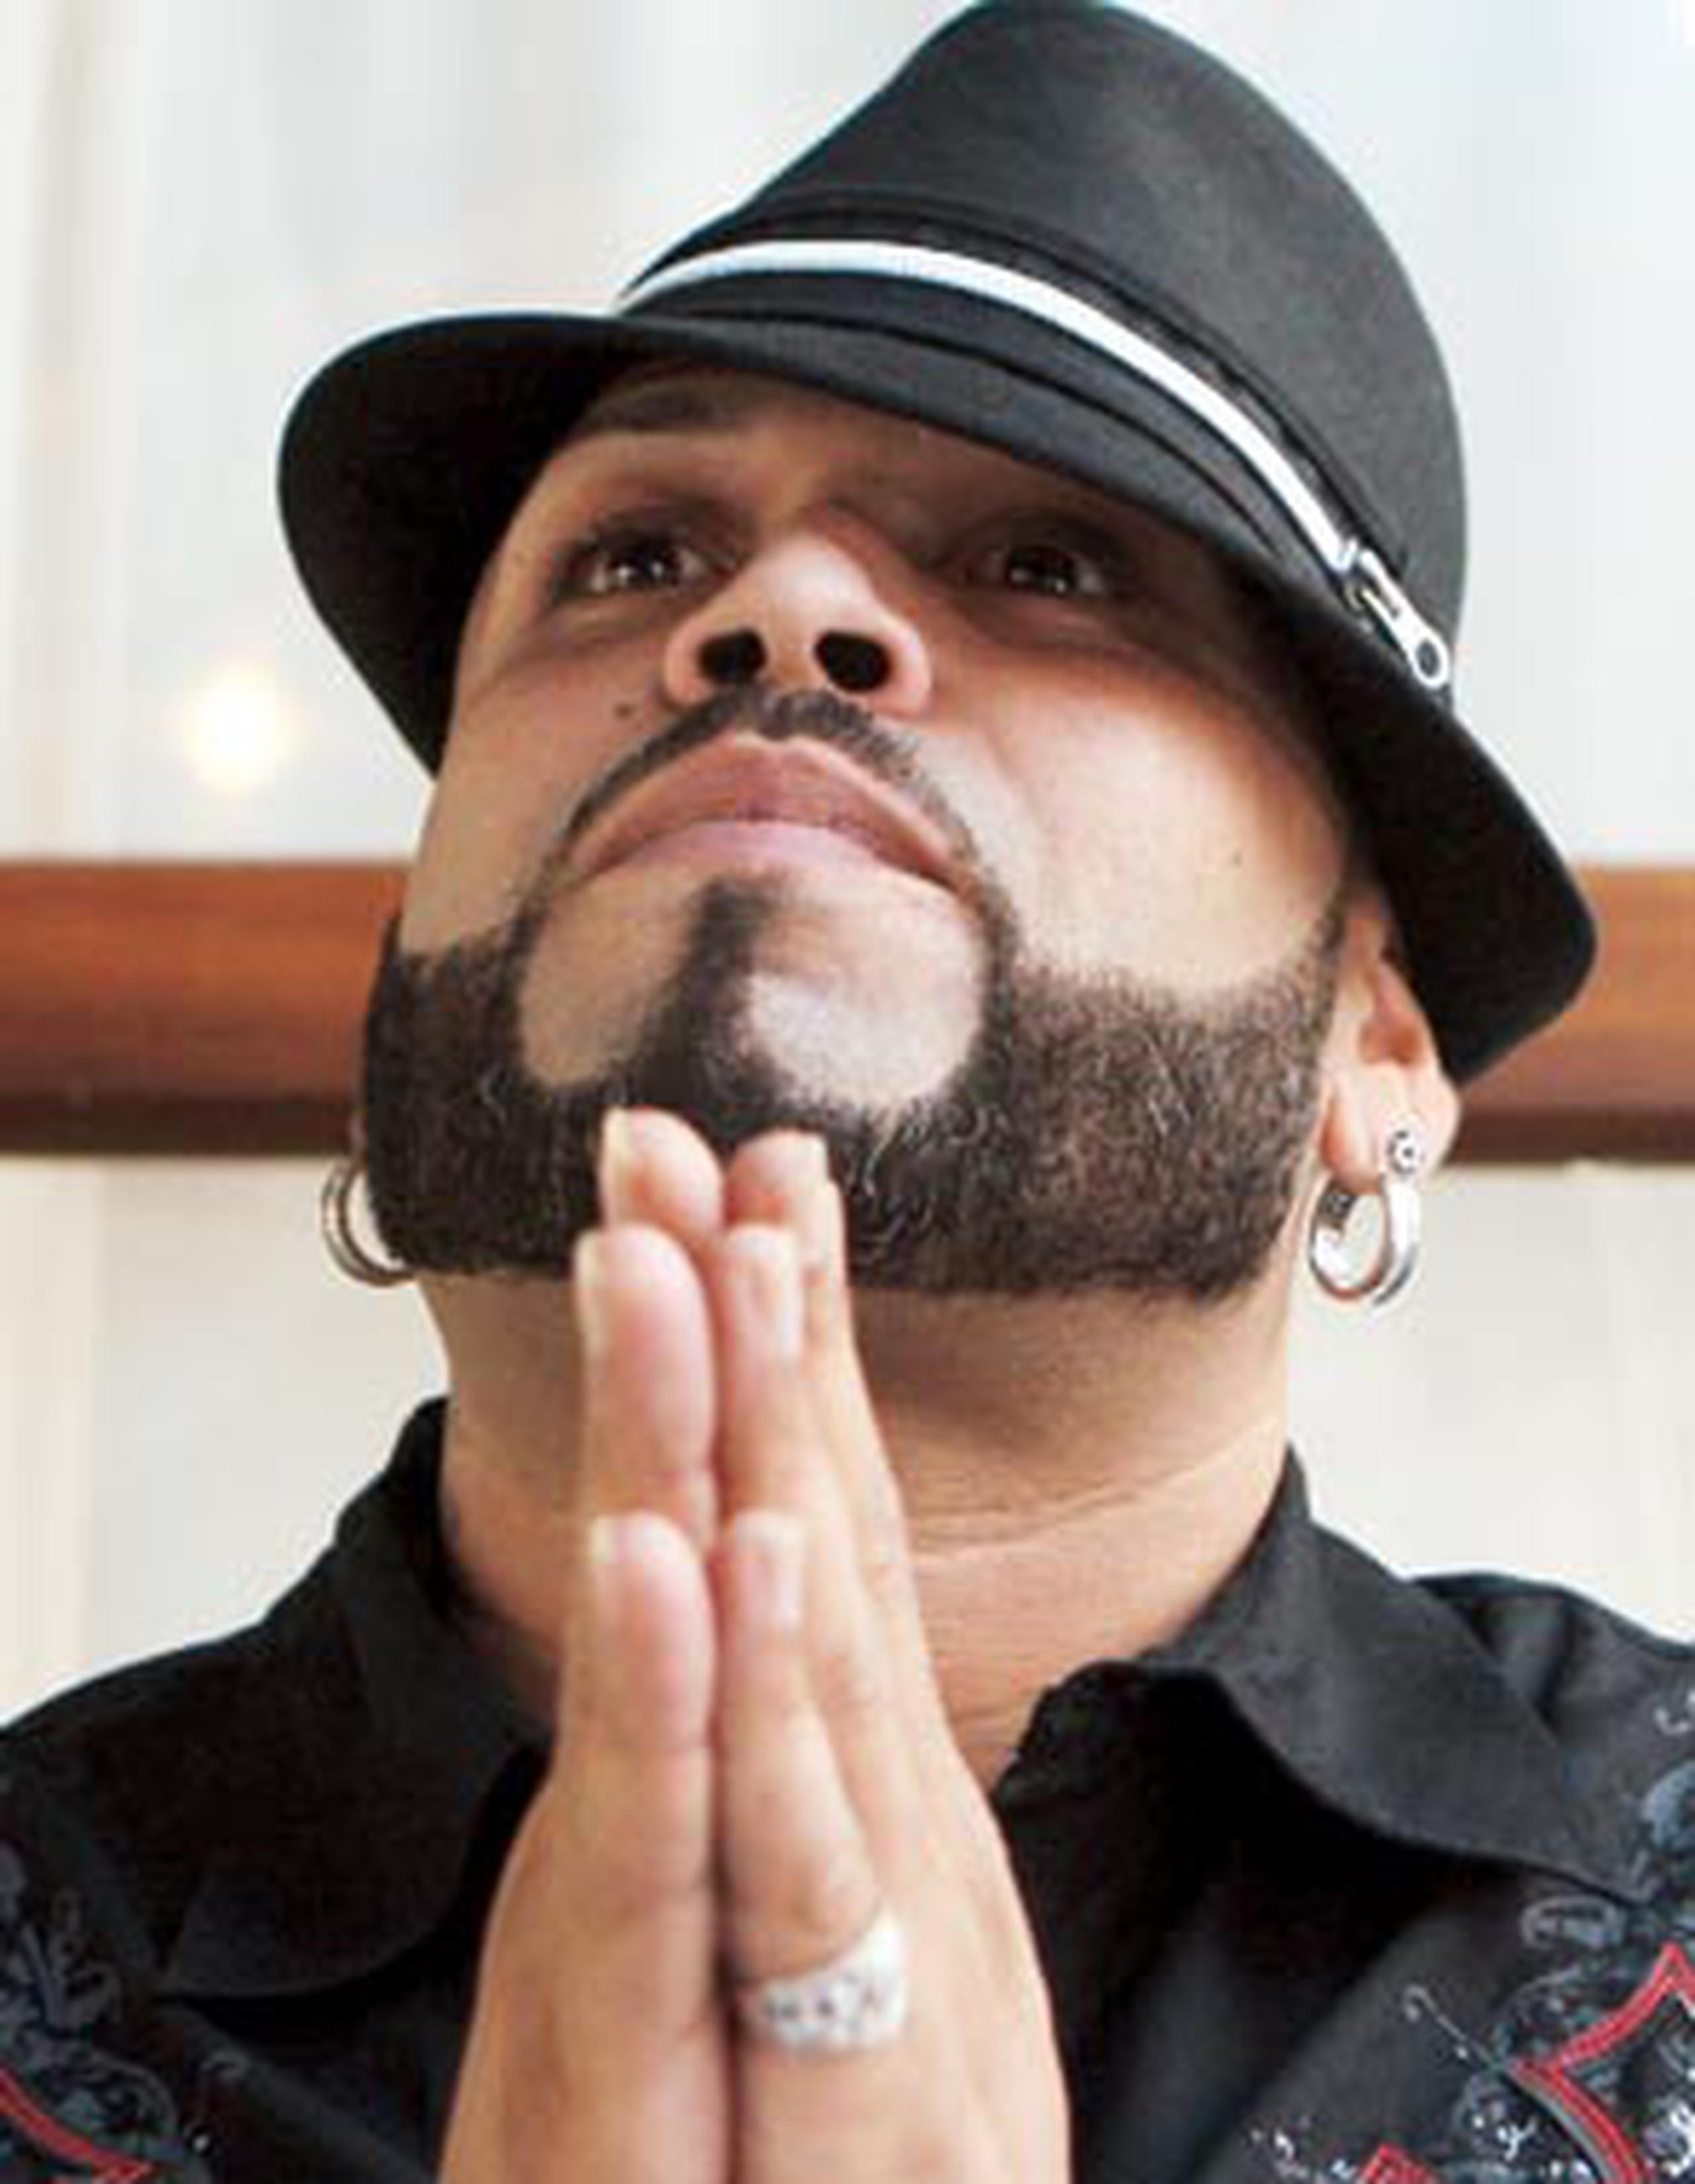 El rapero Mexicano falleció el 23 de julio a causa de un cáncer en la garganta. (Archivo)